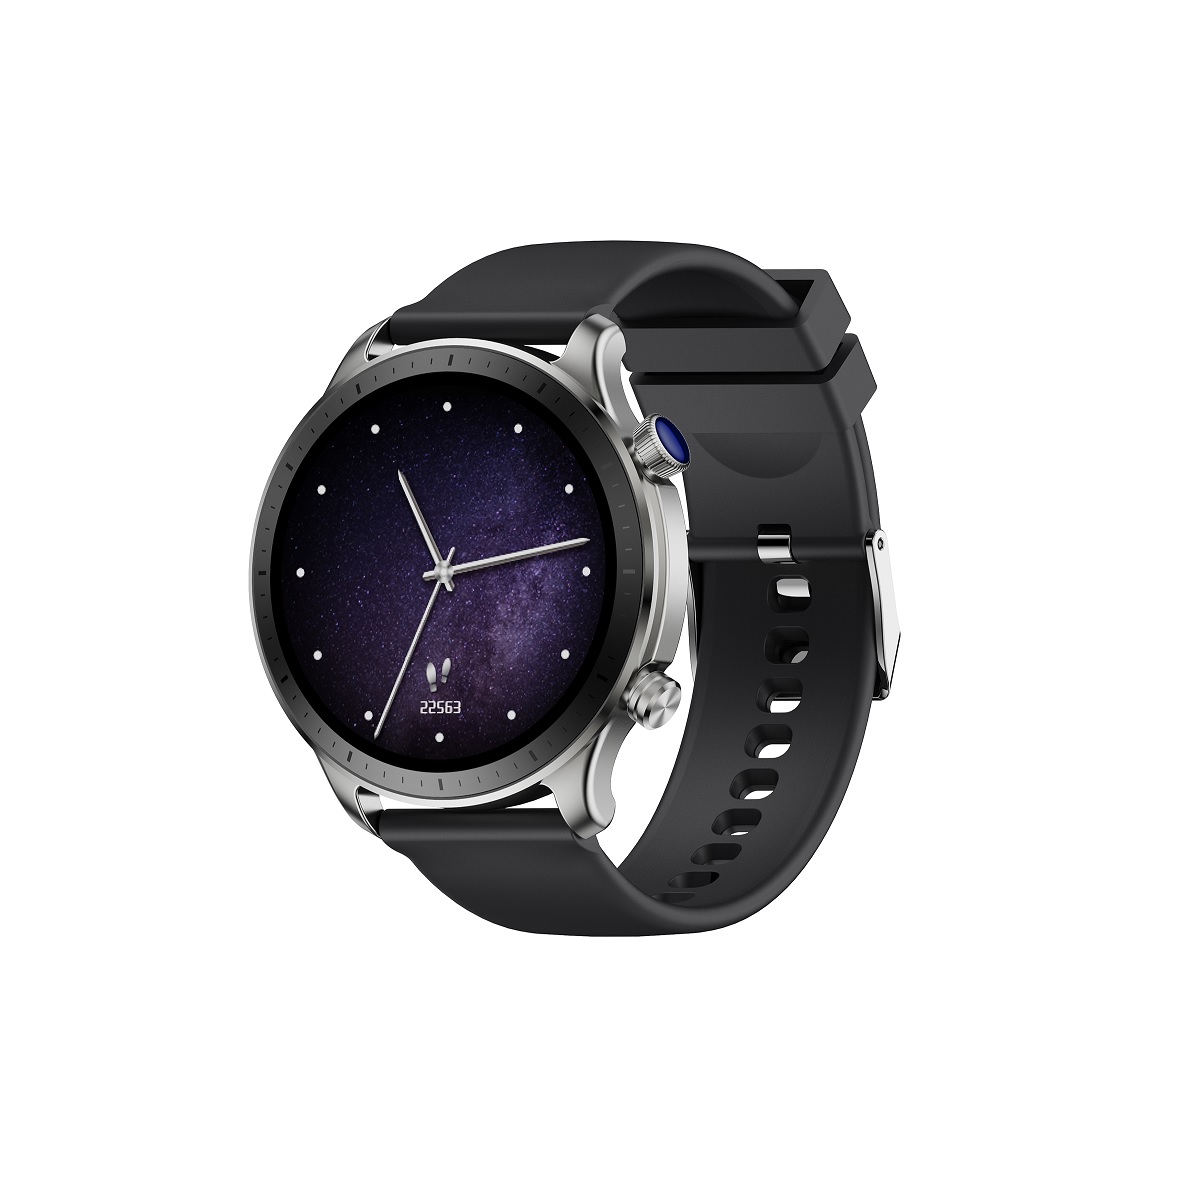 Elegancki zegarek mski wodoodporny elektroniczny sportowy z okrga tarcz smartwatch Riversong Motive 9 Pro szary SW901